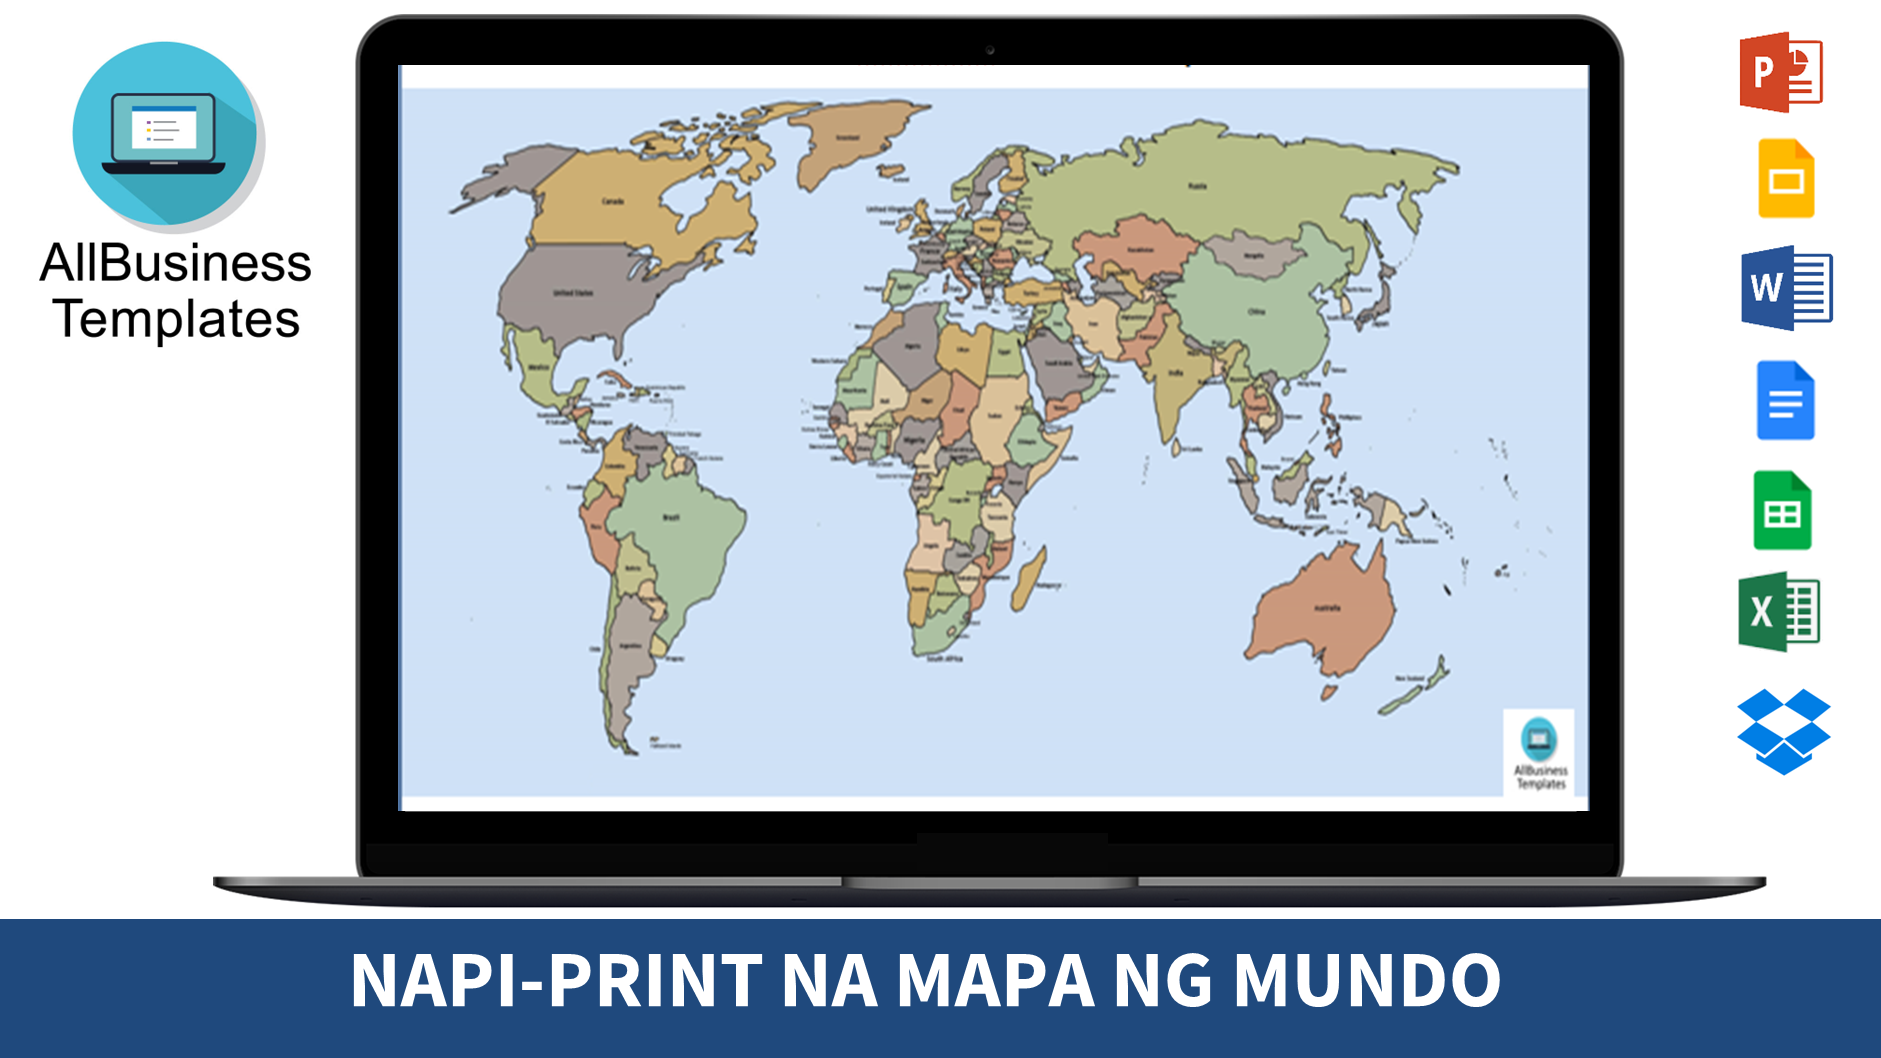 Napi-print na Balangkas ng Mapa ng Mundo main image